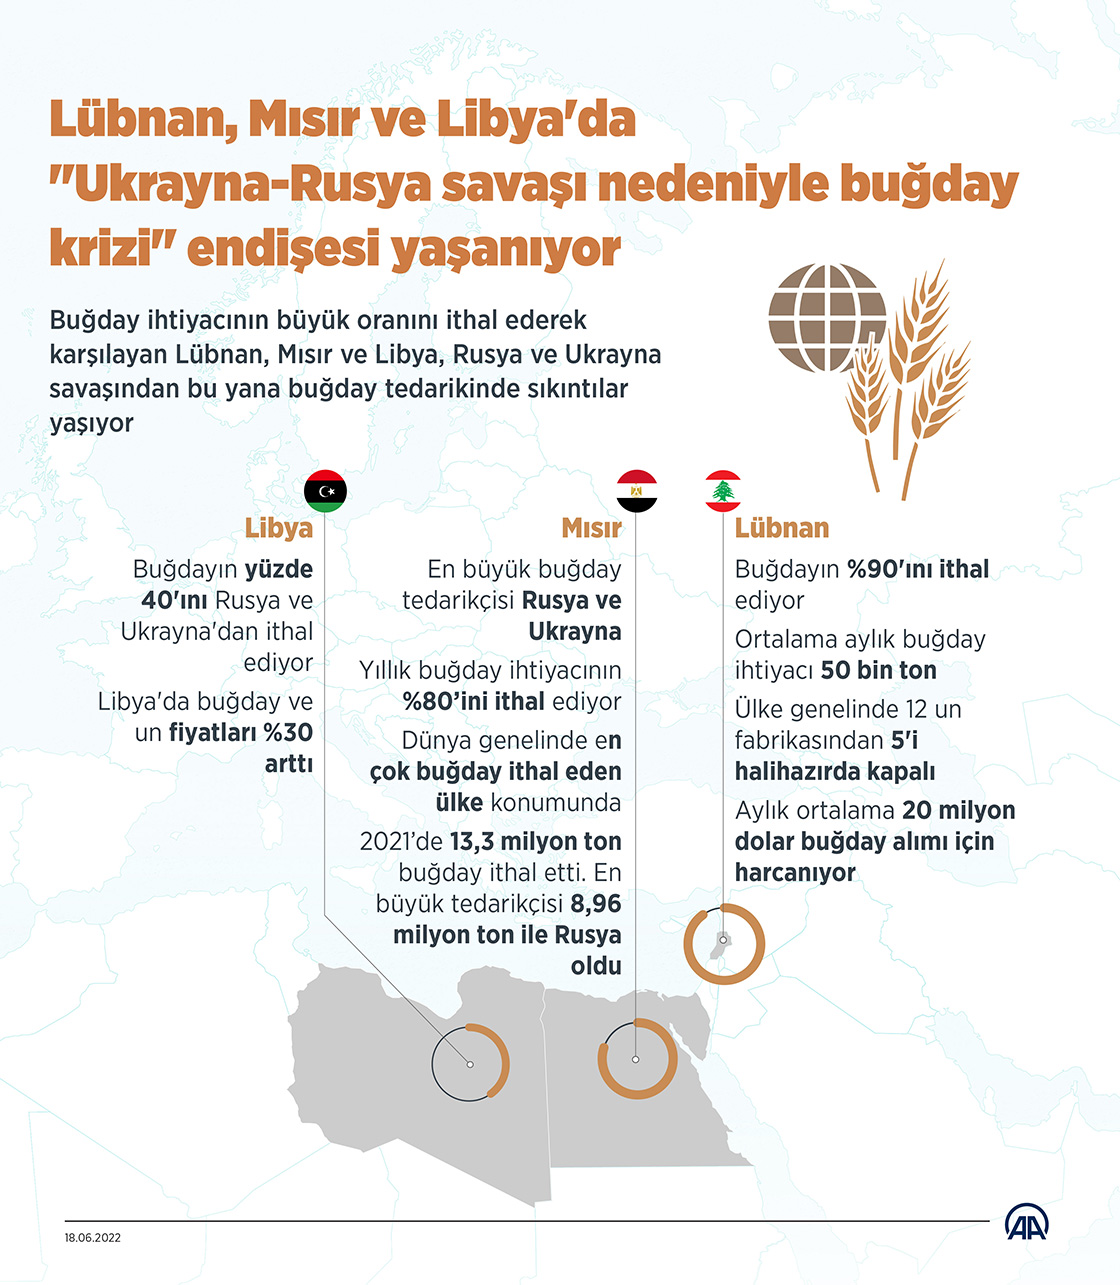 Lübnan, Mısır ve Libya'da "Ukrayna-Rusya savaşı nedeniyle buğday krizi" endişesi yaşanıyor